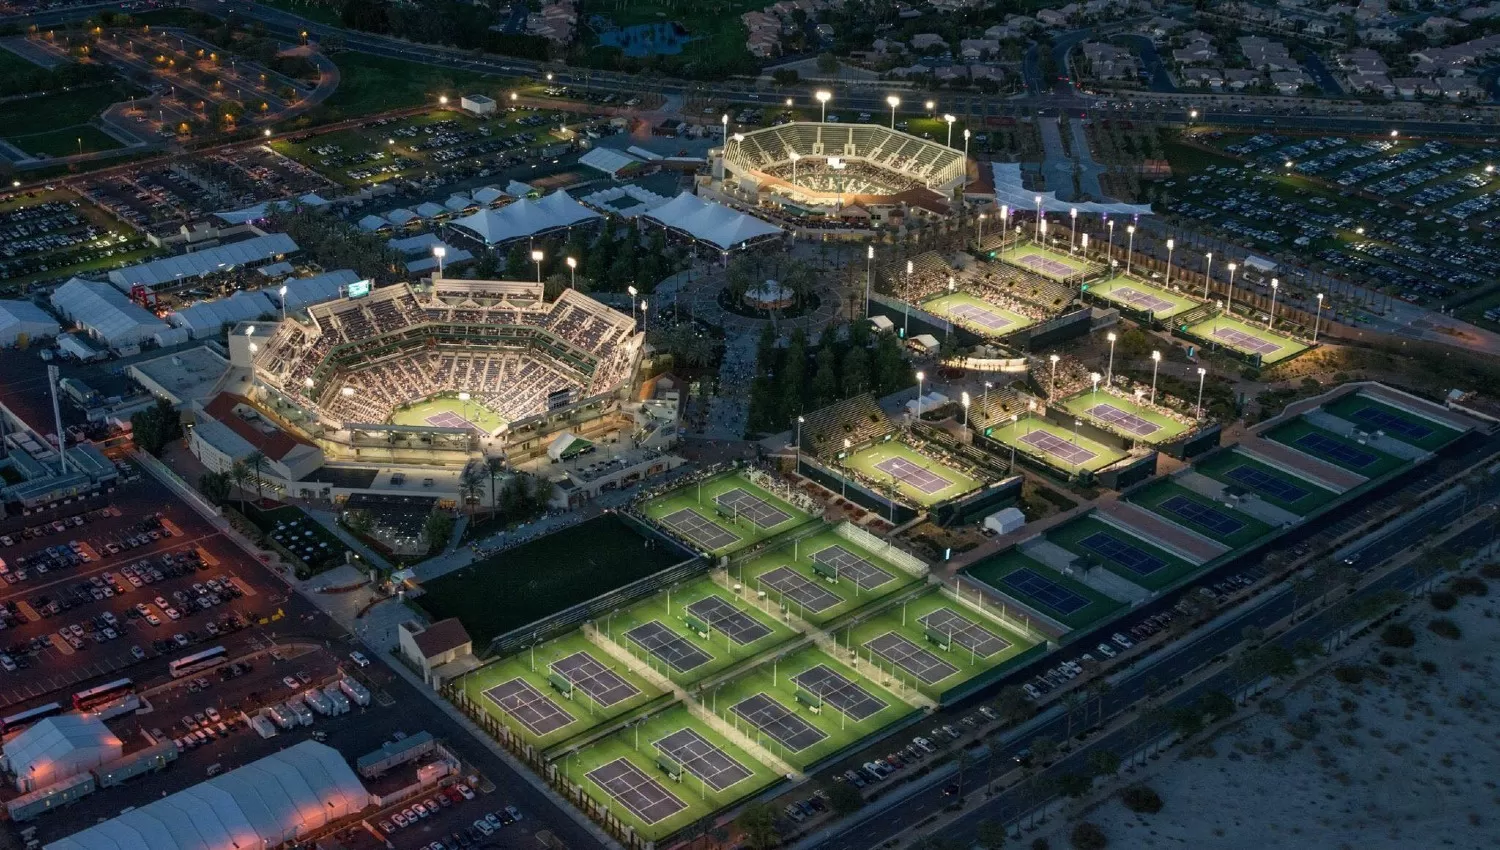 IMPONENTE. El complejo Indian Wells Tennis Garden está ubicado al sudeste de California, cerca de Palm Springs.